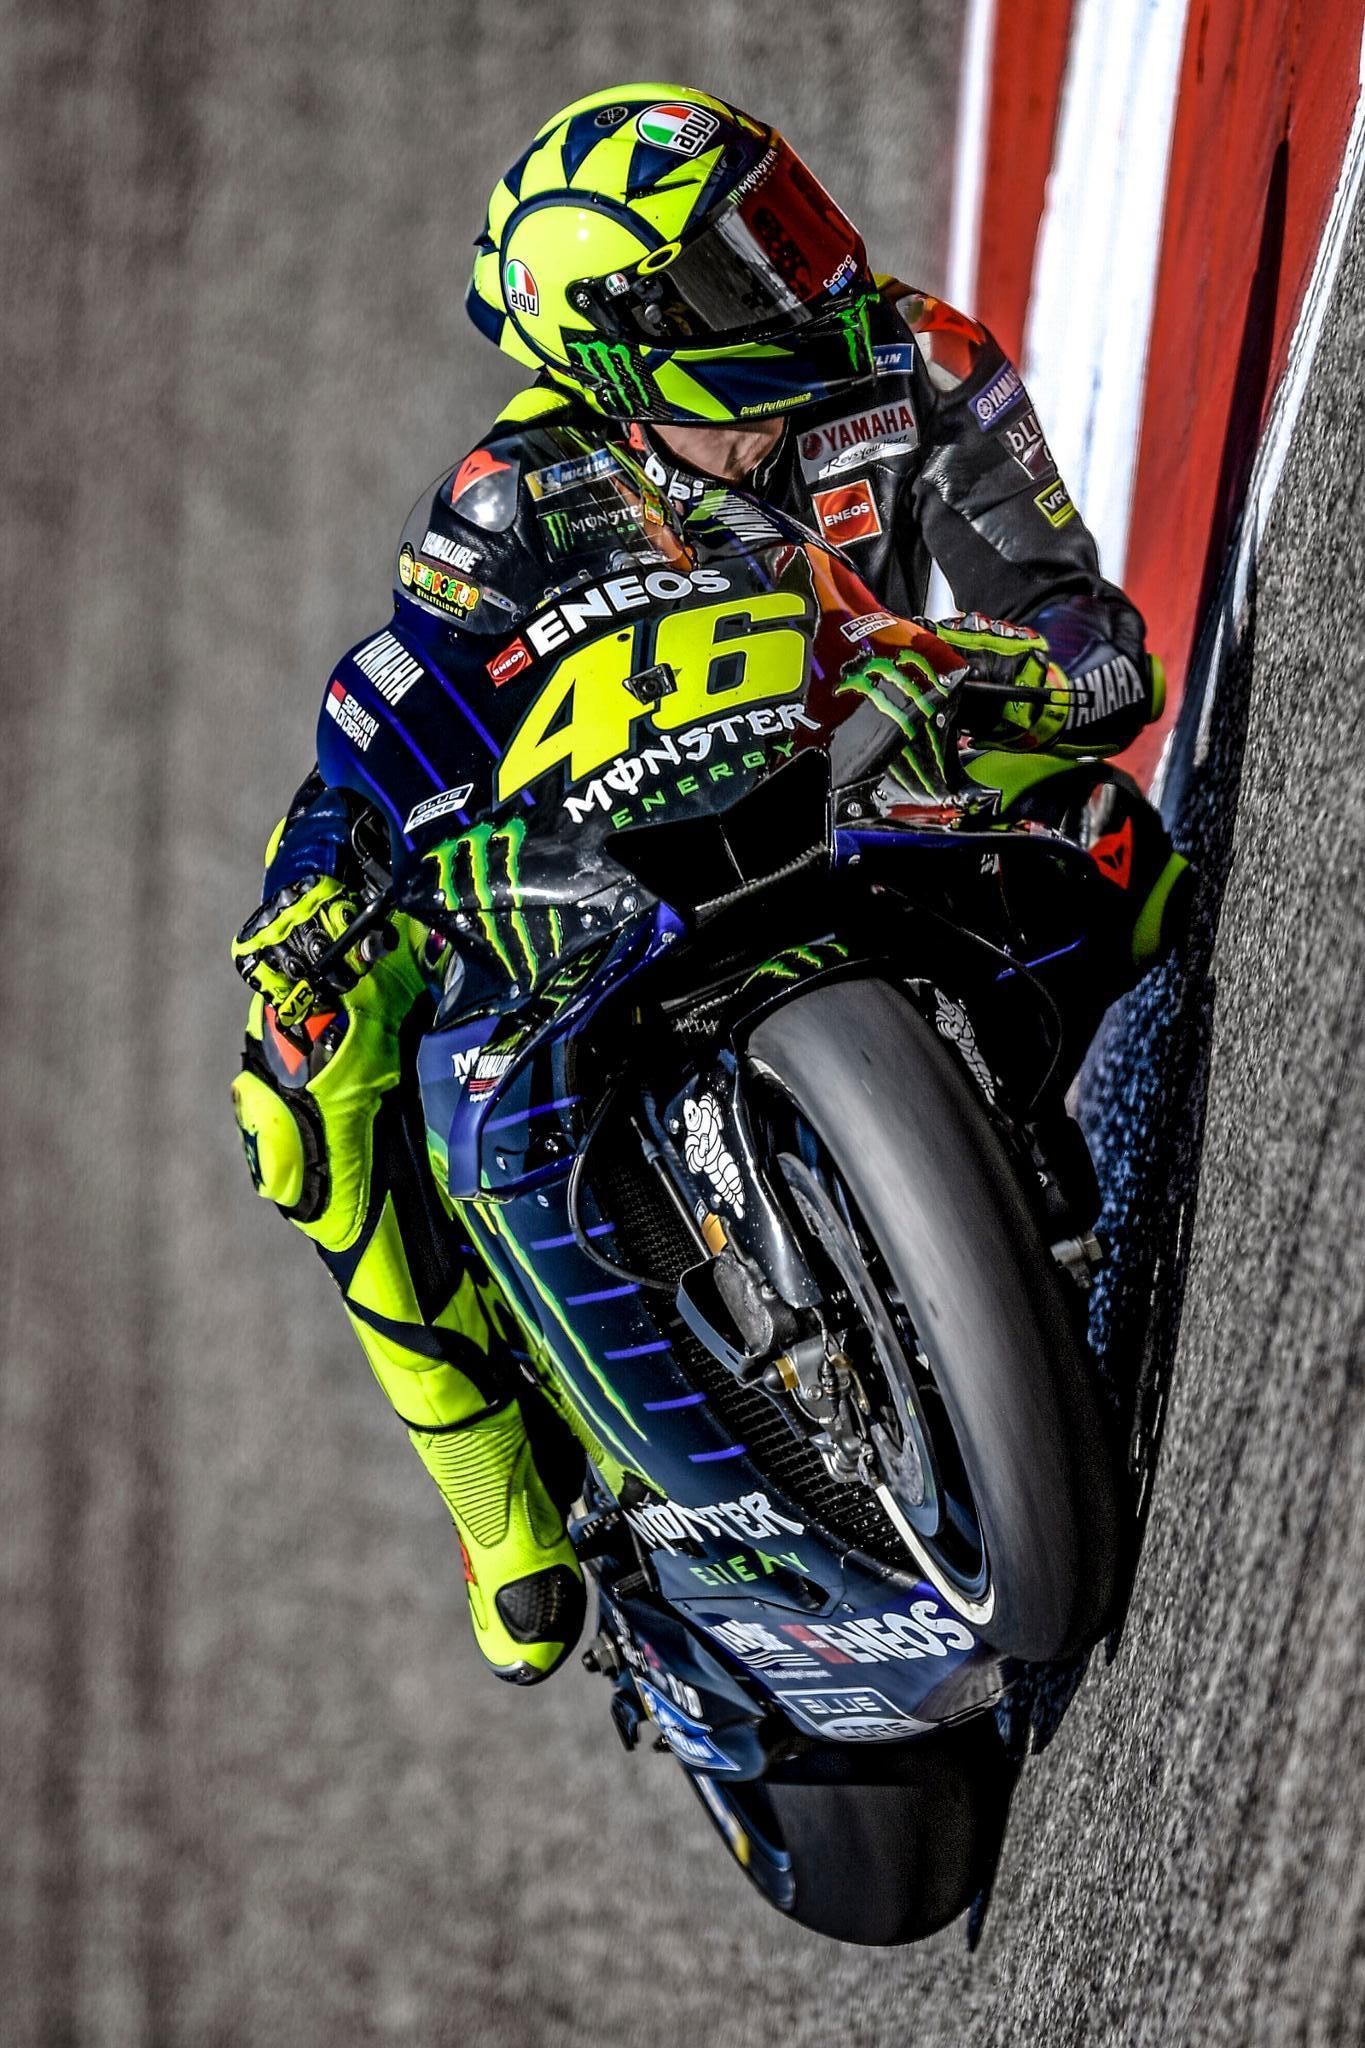 MotoGP 2020 Wallpapers - Wallpaper Cave